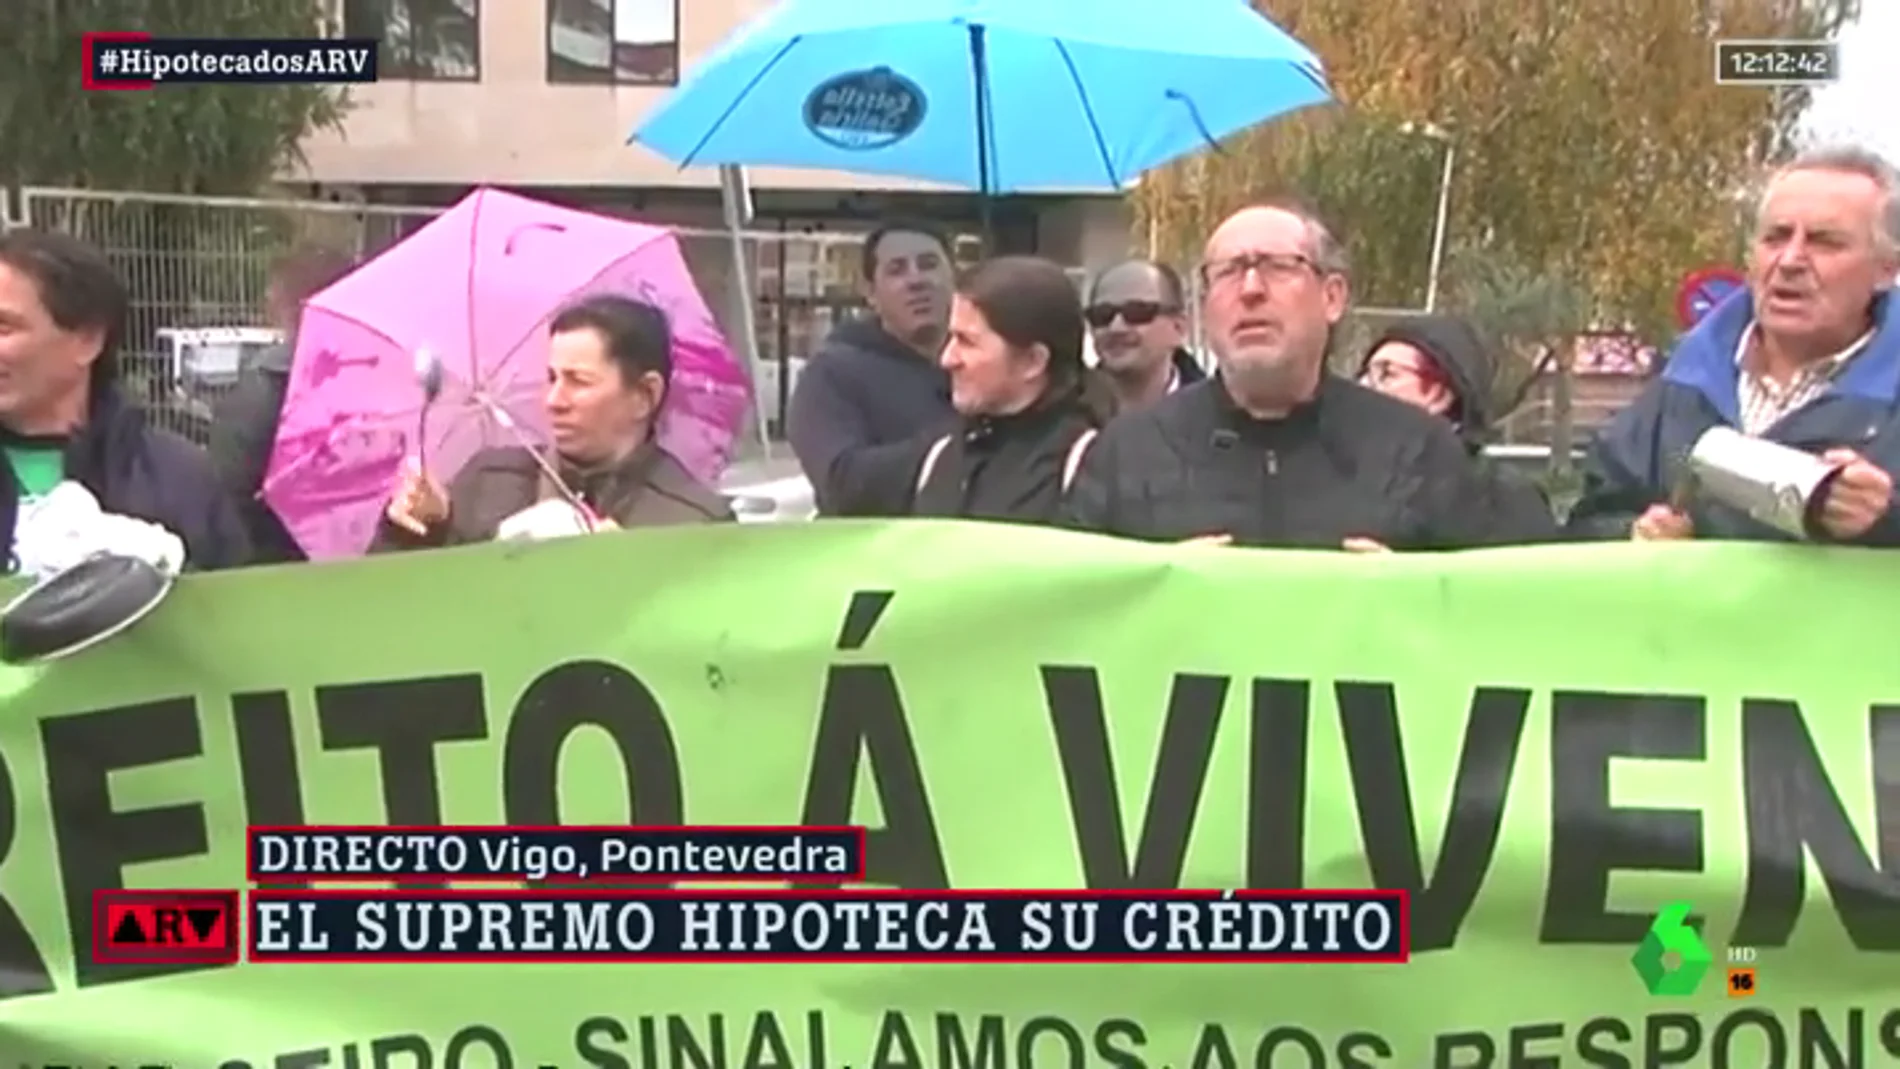 Caceroladas en distintas ciudades de España contra la decisión del Supremo sobre las hipotecas: "Lesmes dimisión"